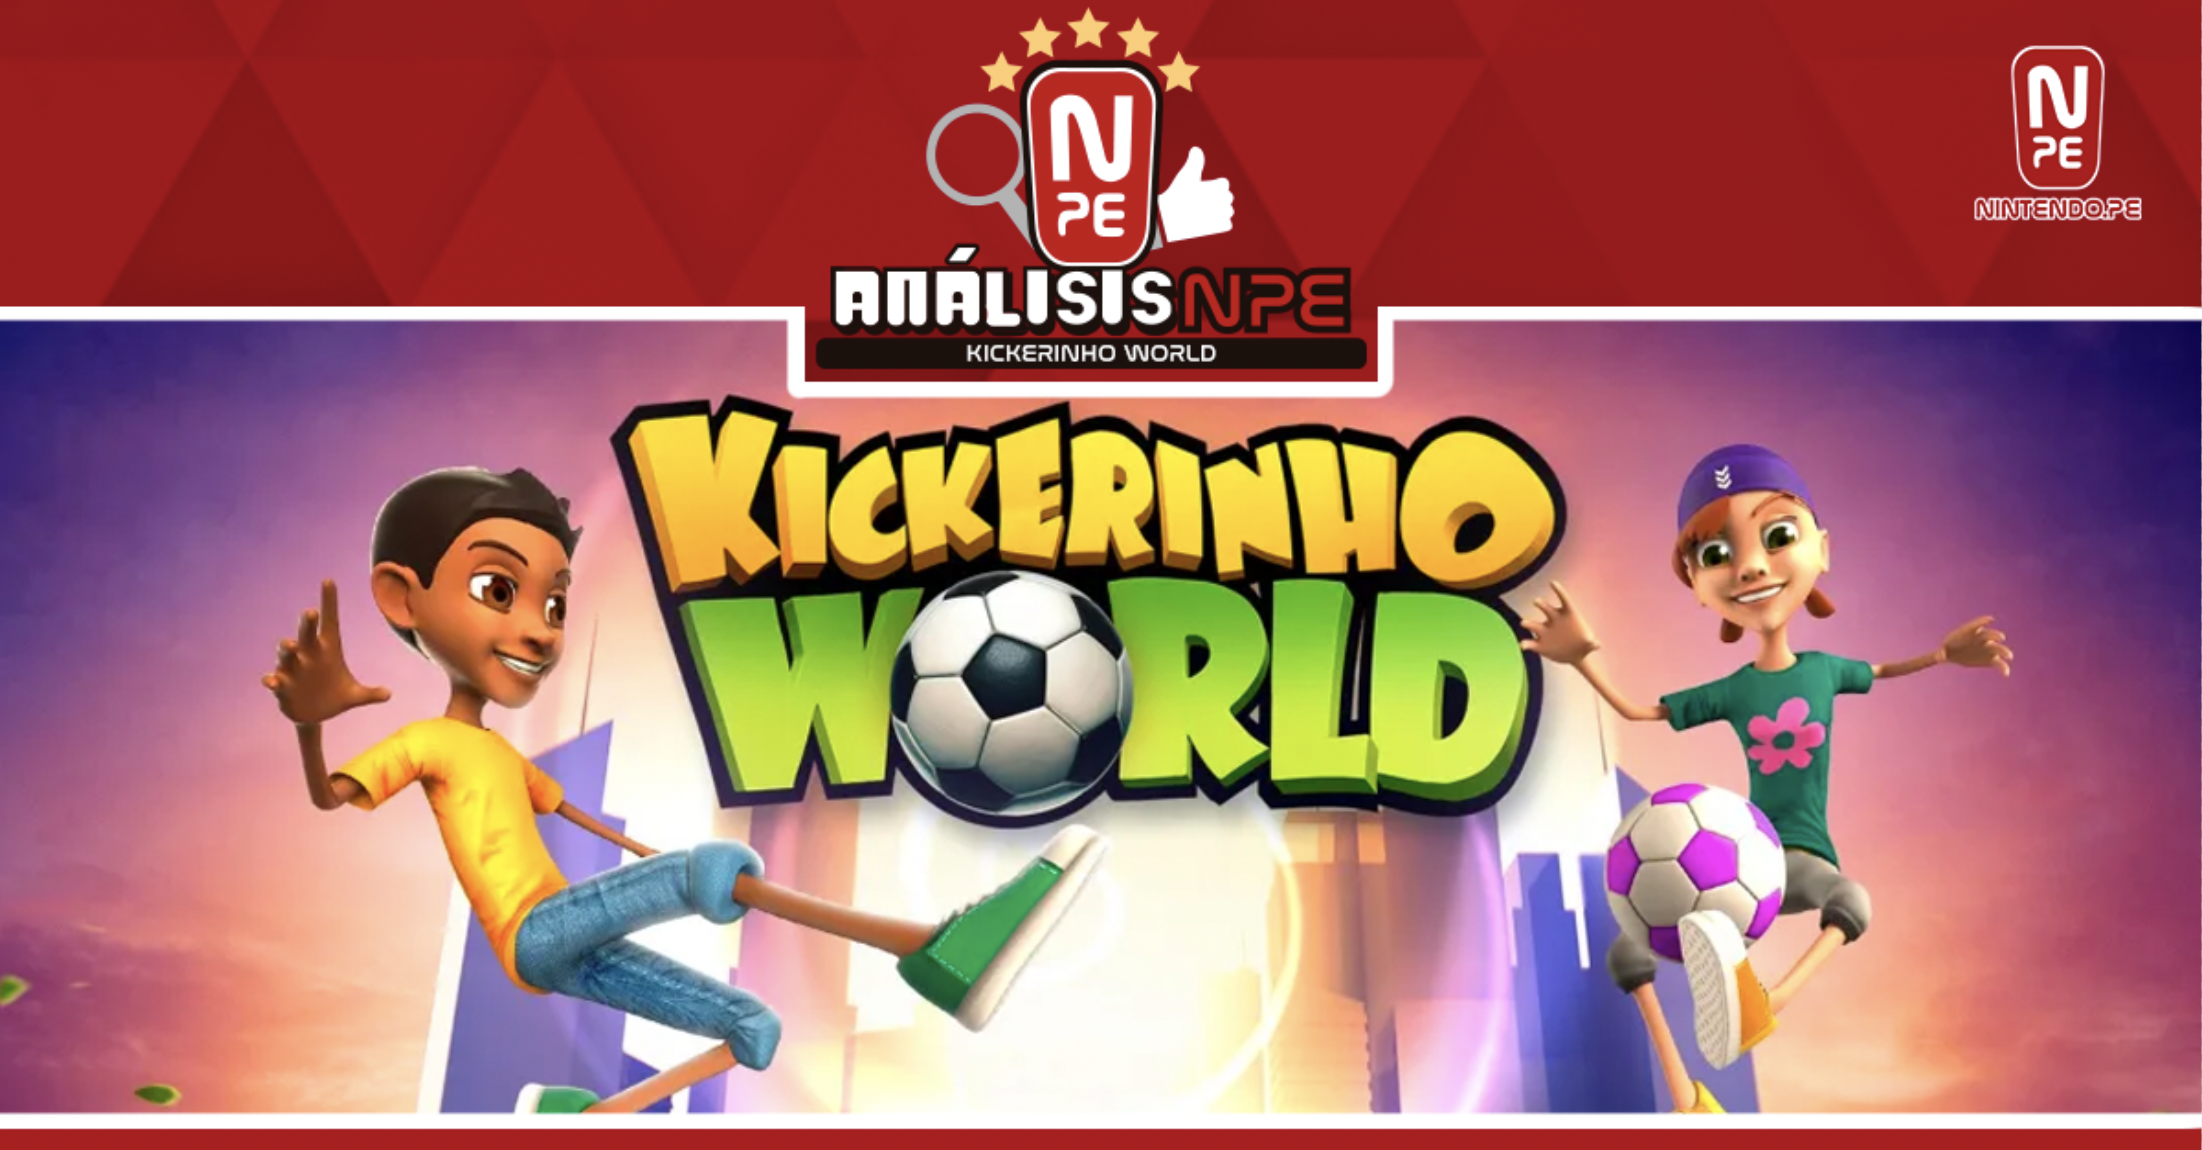 Kickerinho World for Nintendo Switch - Nintendo Official Site